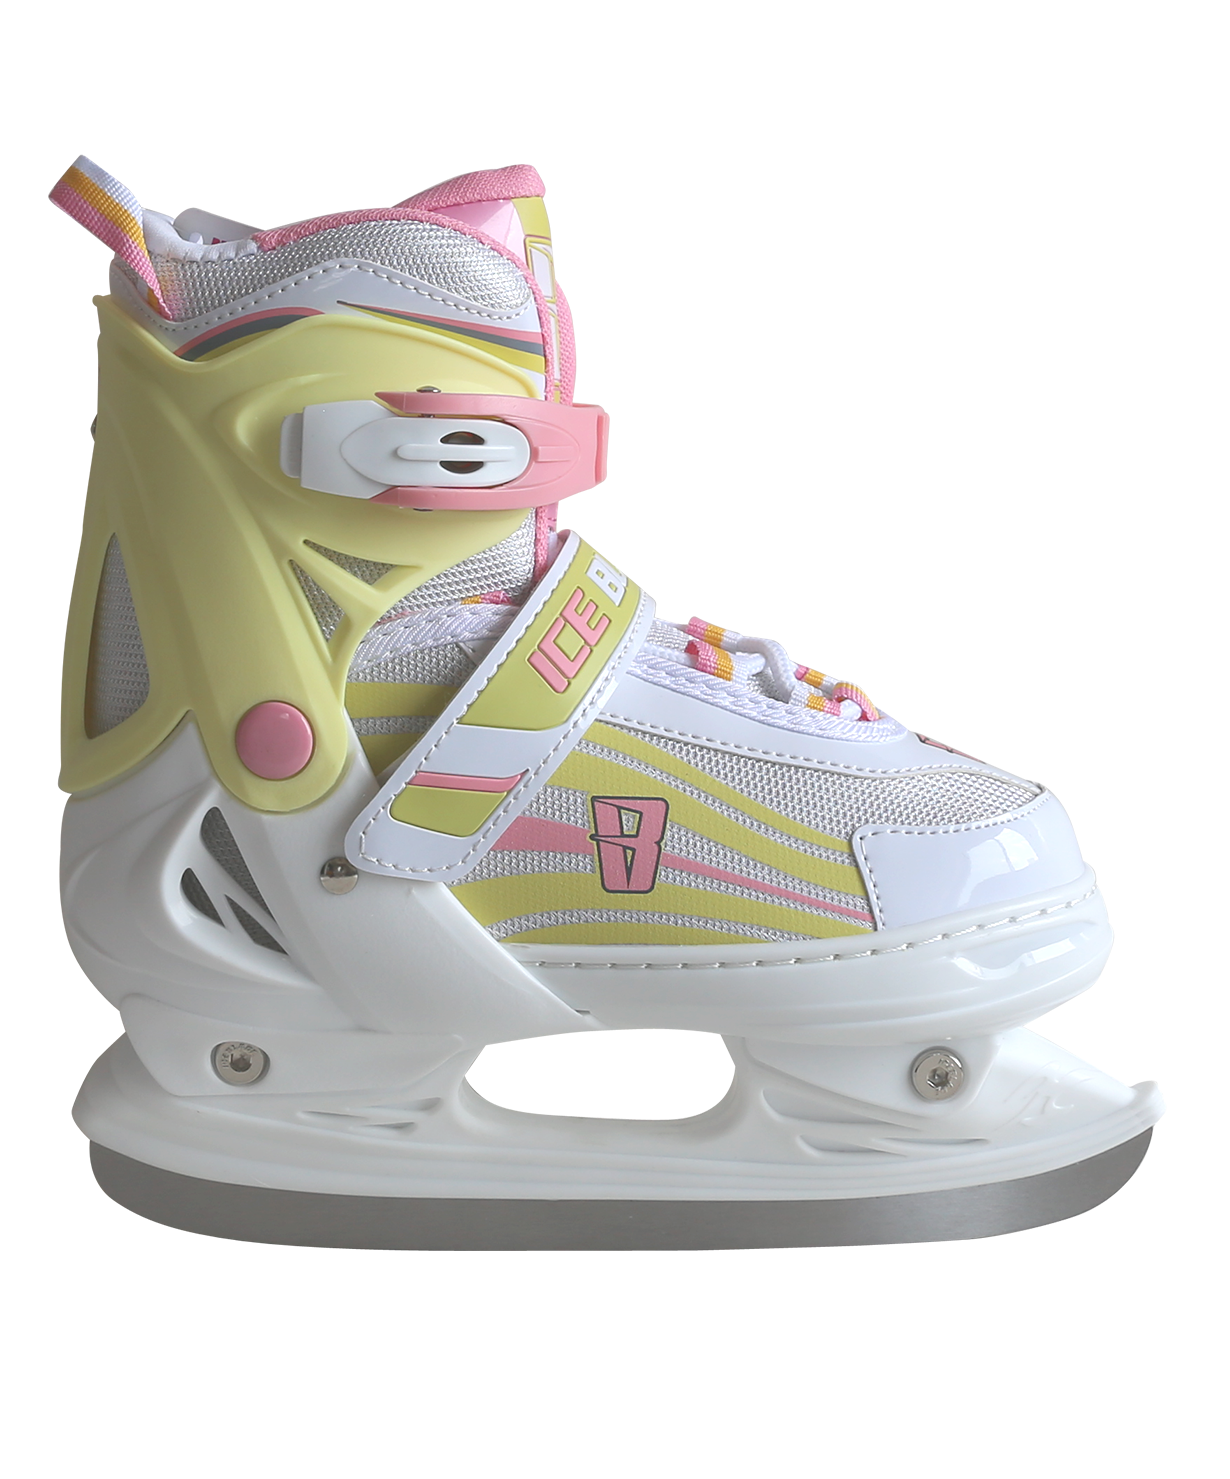 Chaussures de skate, lames de patin